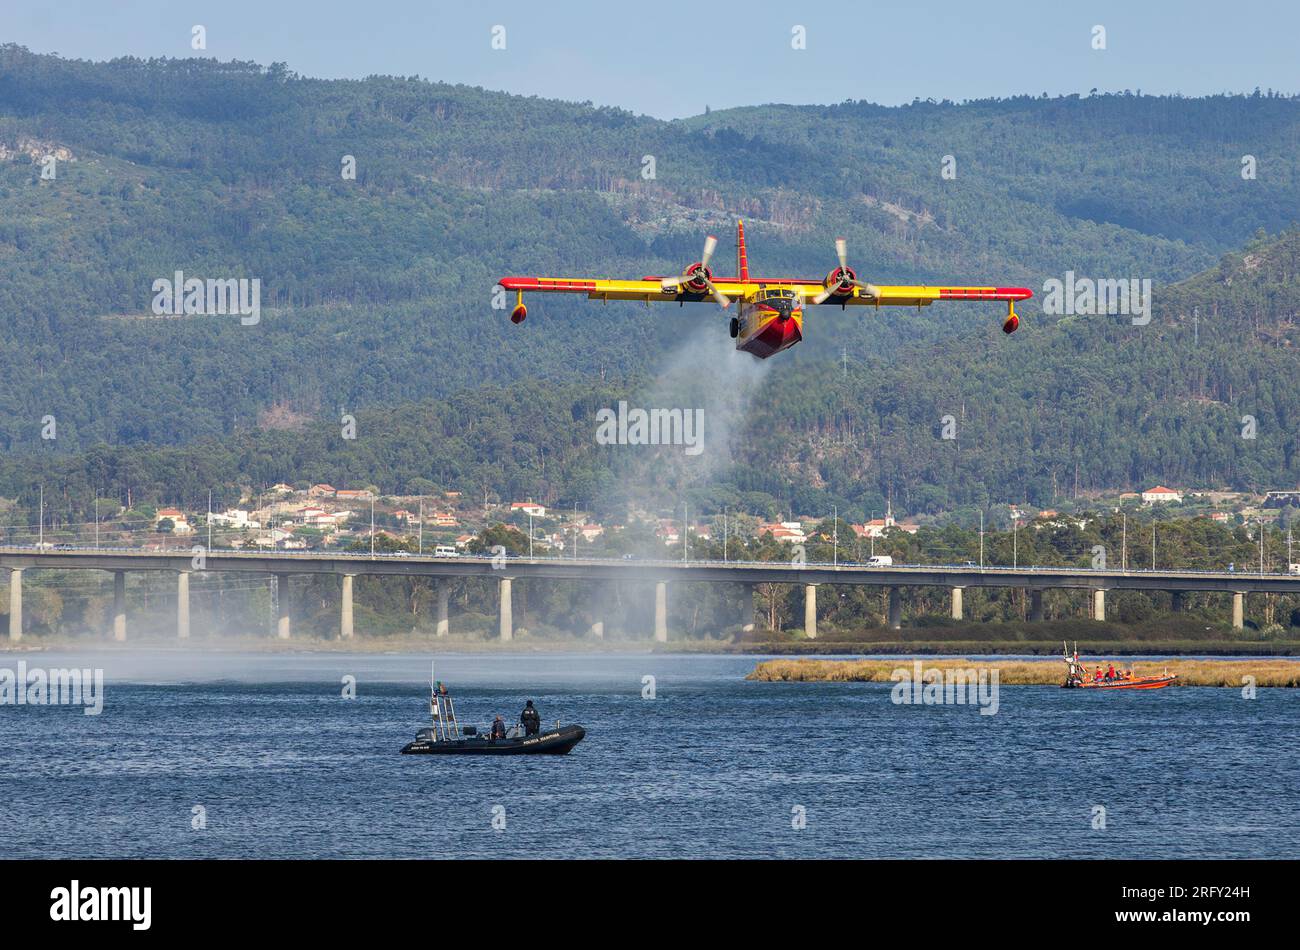 Viana do Castelo, Portugal - 21 août 2015 : avion Canadair décollant après remplissage d'eau sur la rivière Lima à Viana do Castelo, Portugal, alors que f Banque D'Images